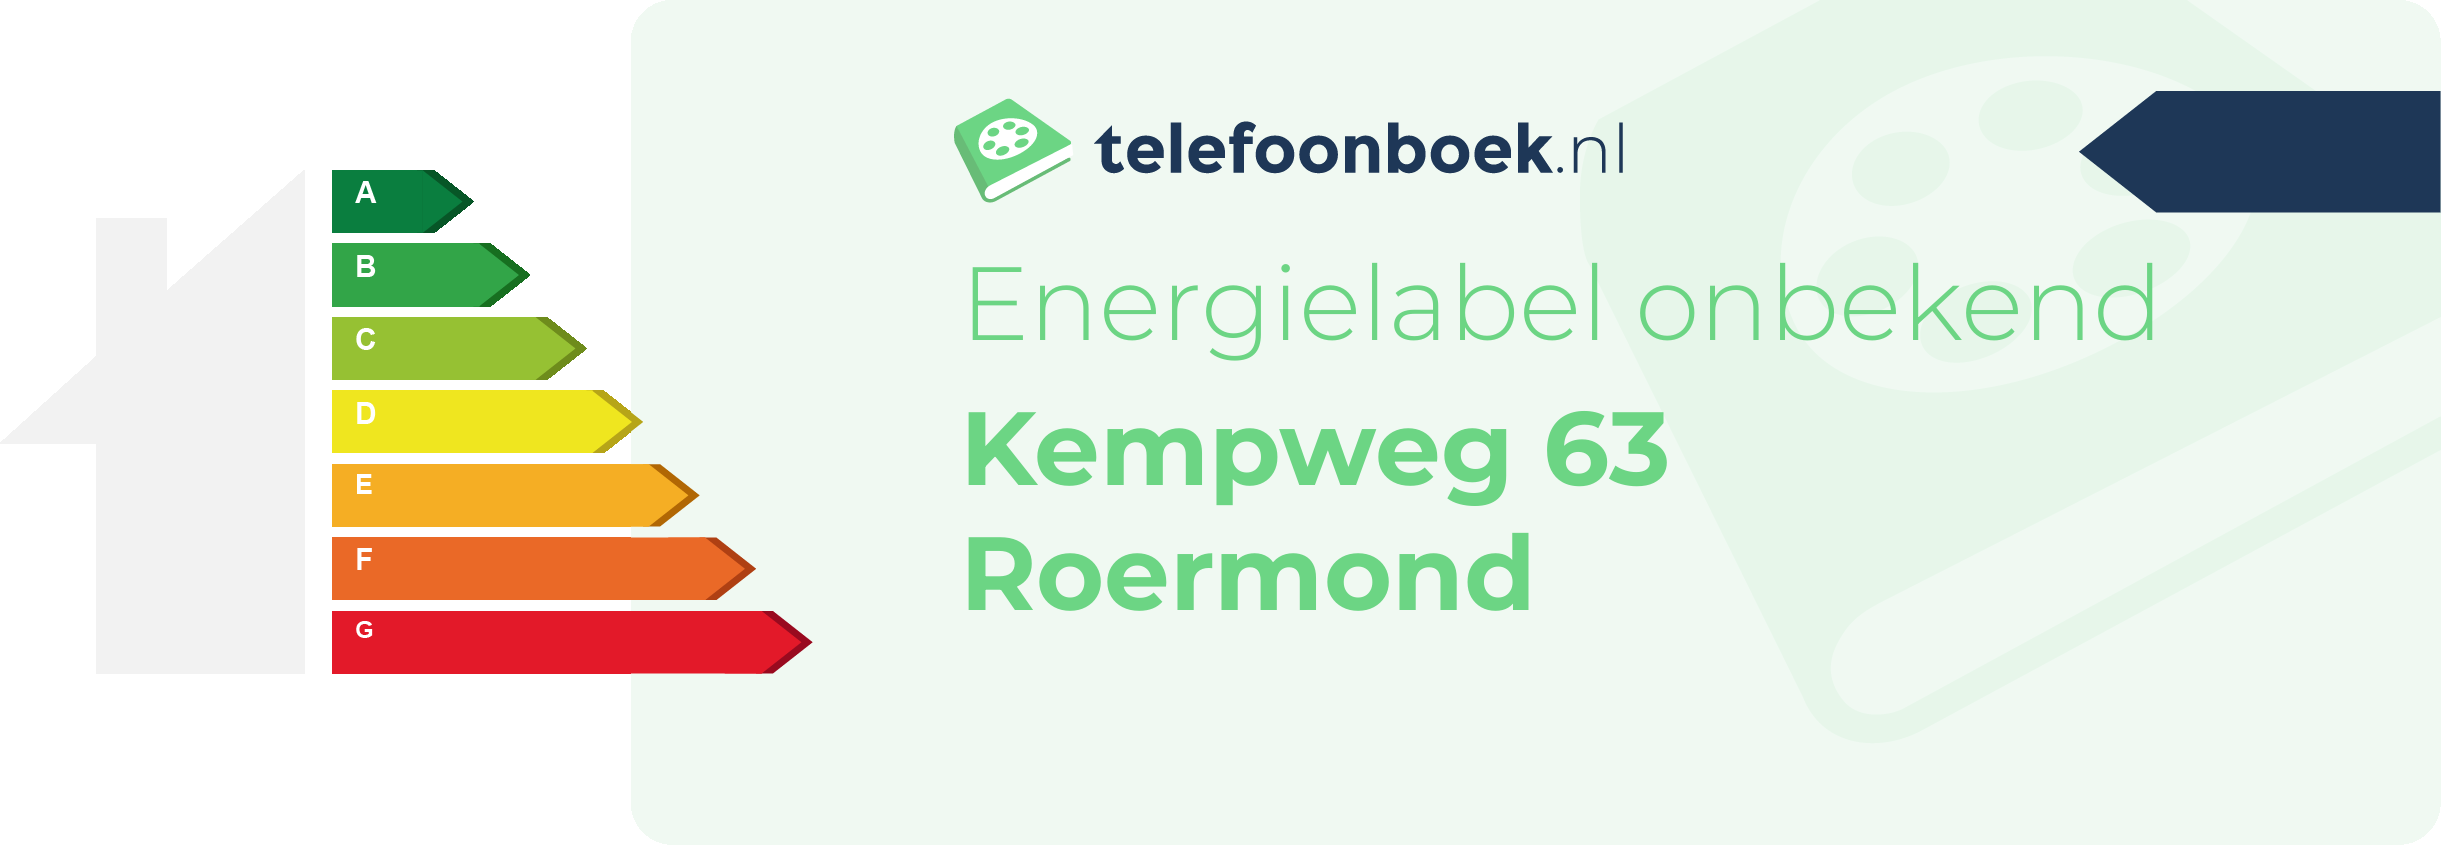 Energielabel Kempweg 63 Roermond